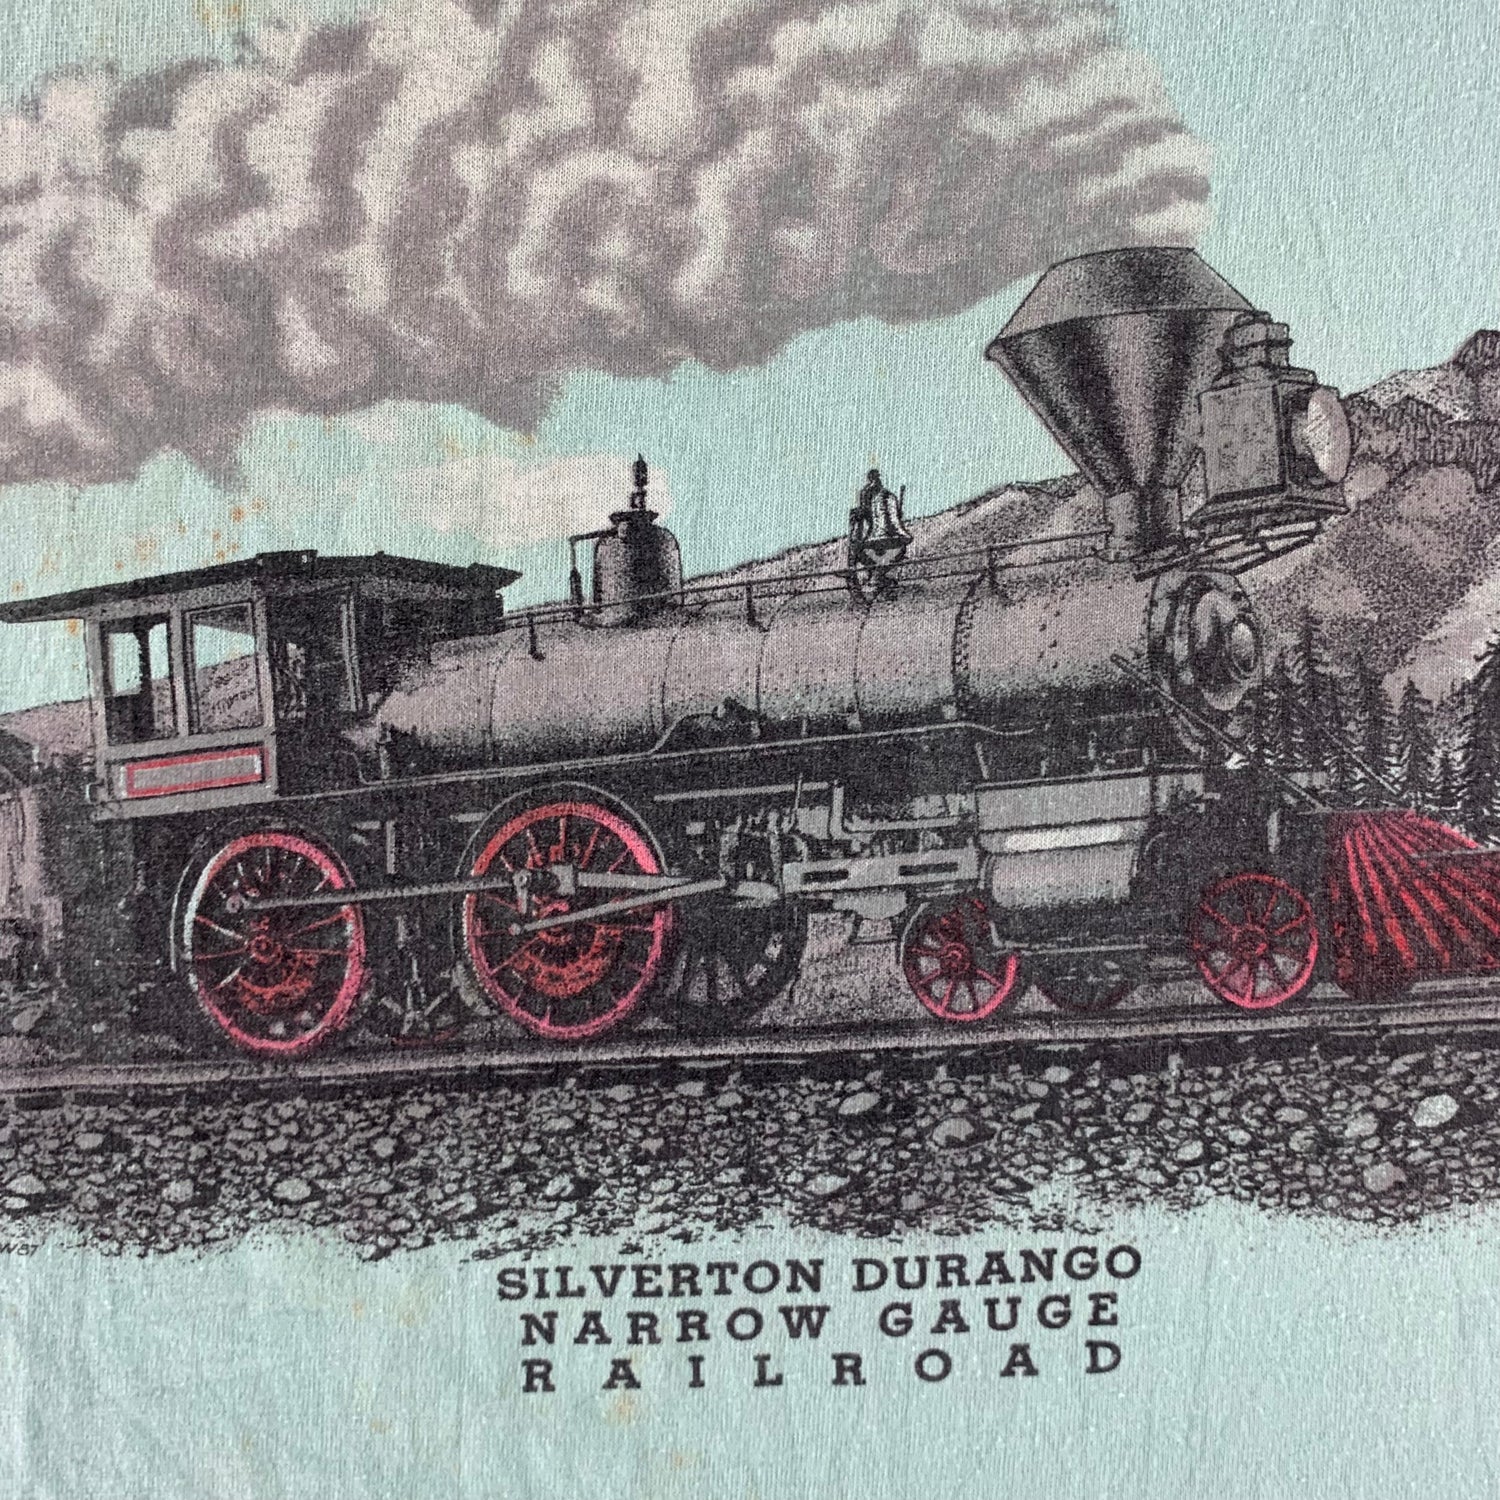 Vintage 1980s Railroad T-shirt size XL